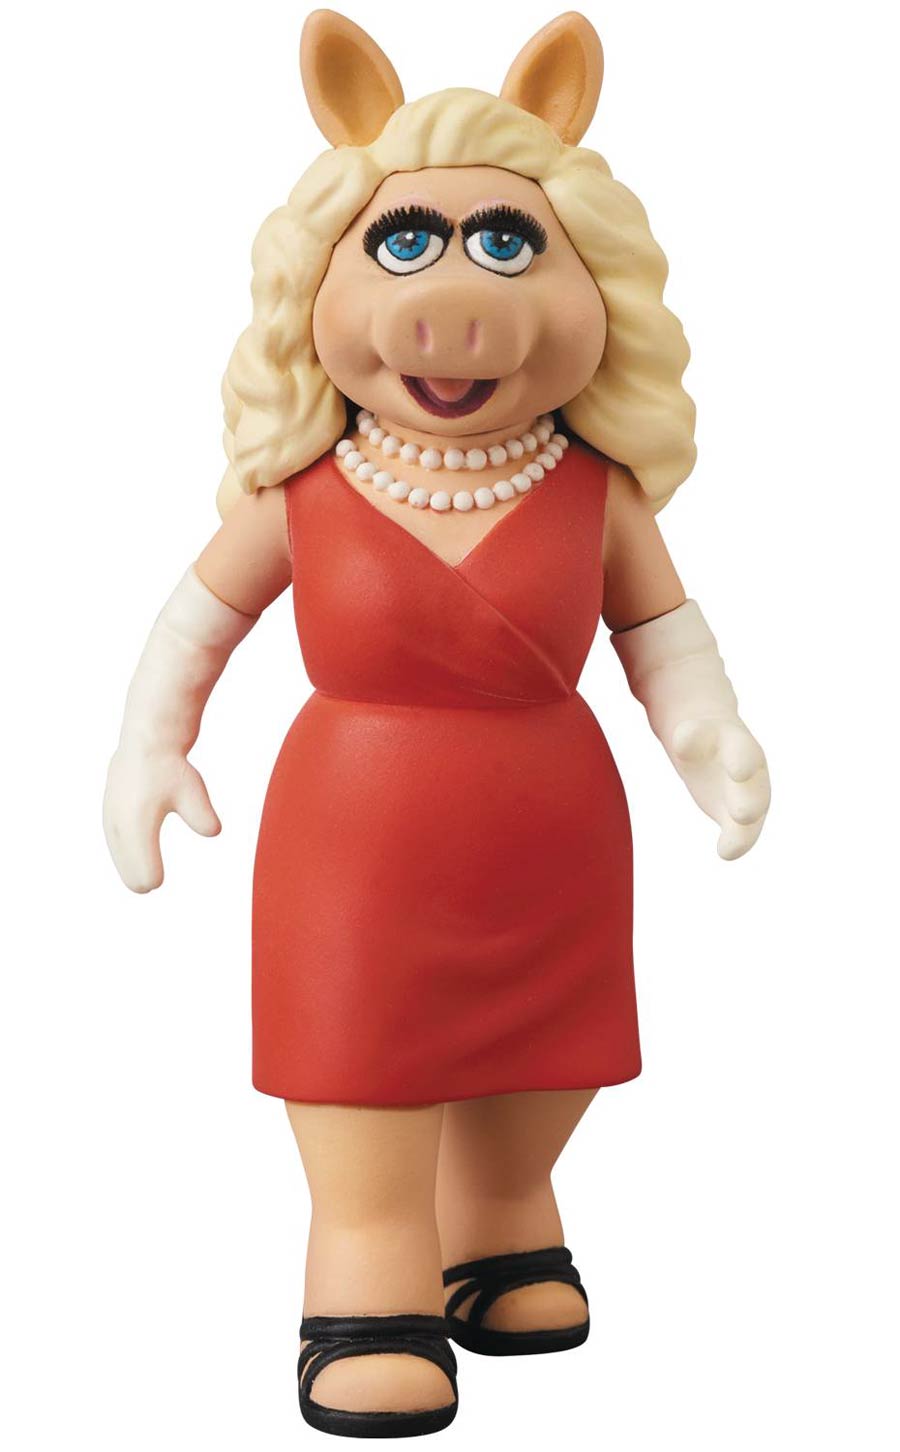 Disney Ultra Detail Figure Series 8 - Miss Piggy